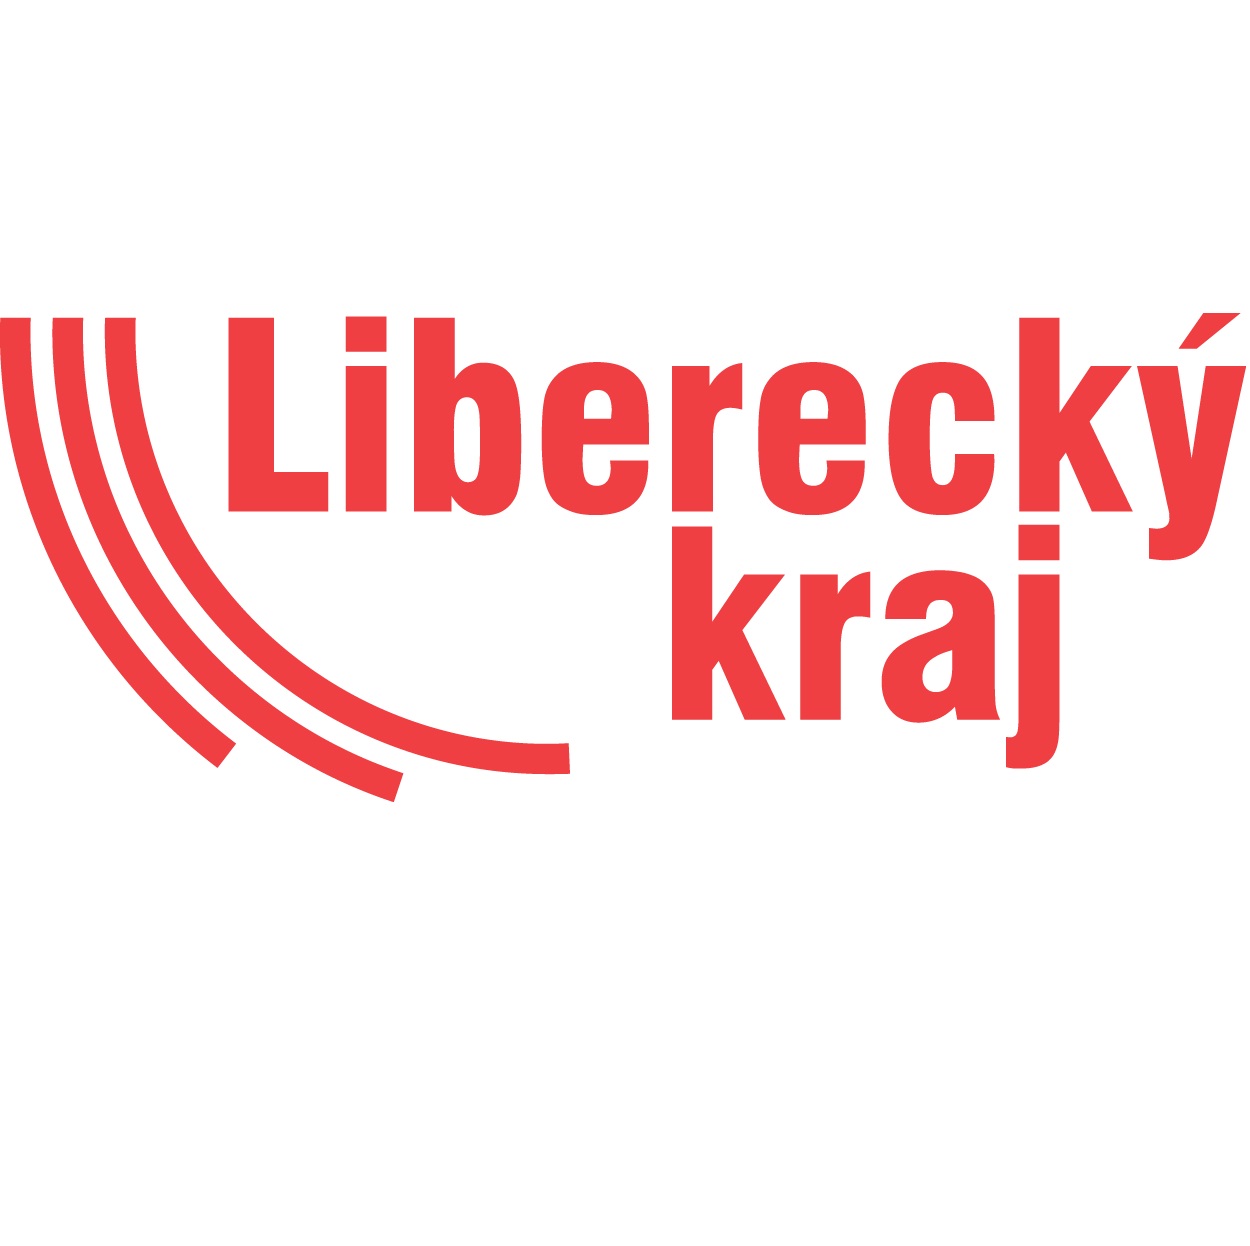 Liberecký kraj - logo